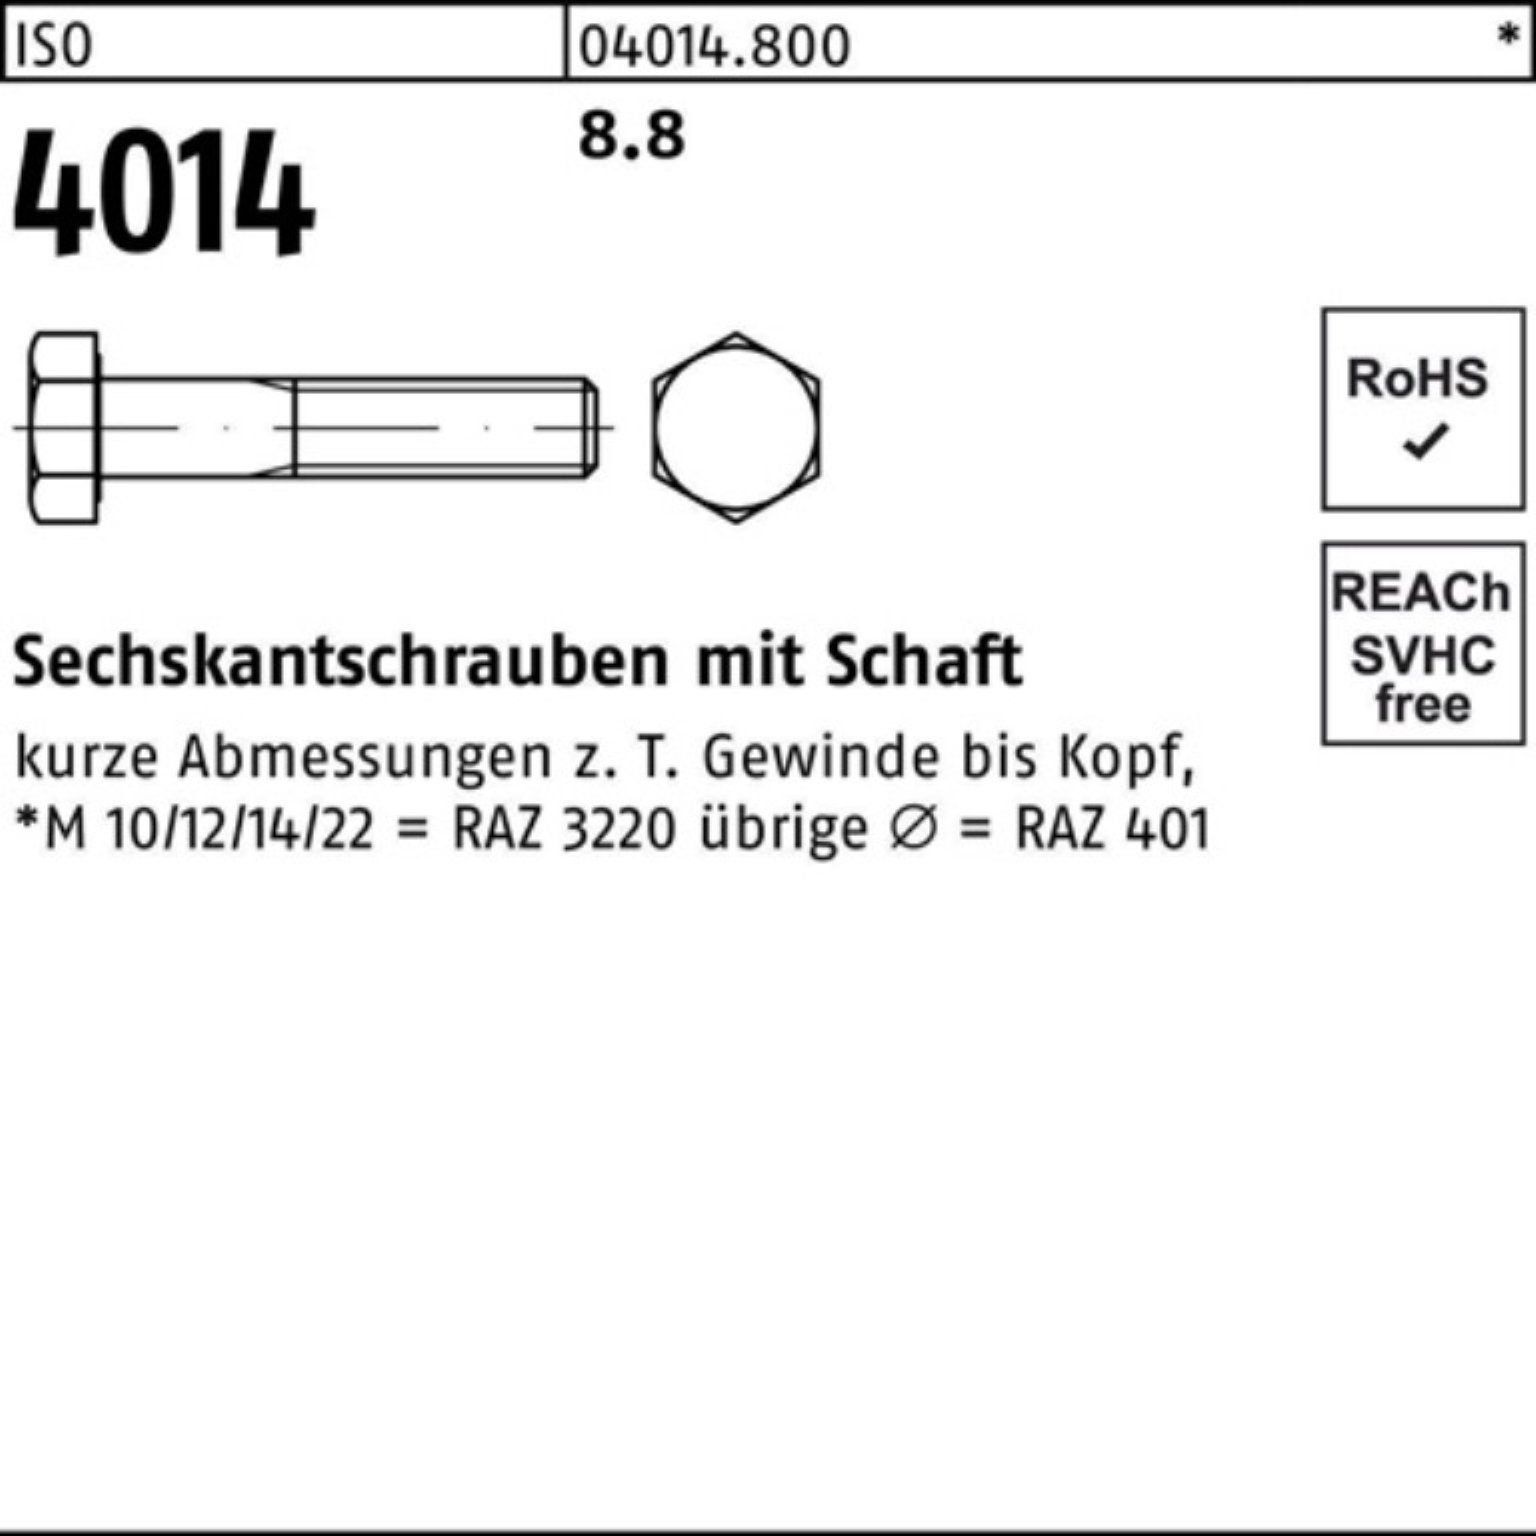 1 ISO Schaft Sechskantschraube 100er Sechskantschraube ISO 8.8 Bufab Stück 4014 170 Pack M27x